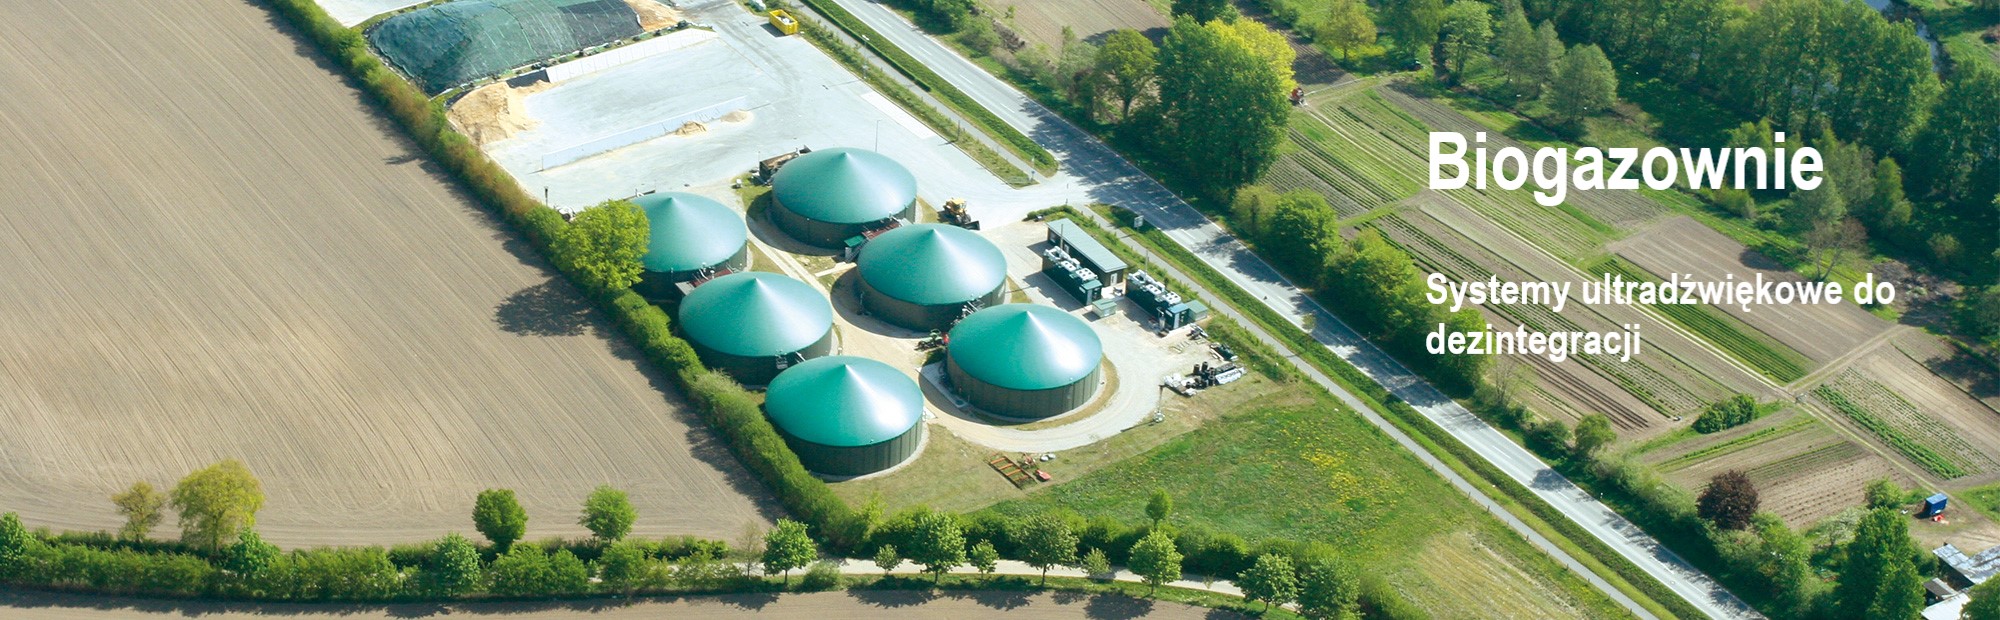 Biogasanlagen slider pic.jpg